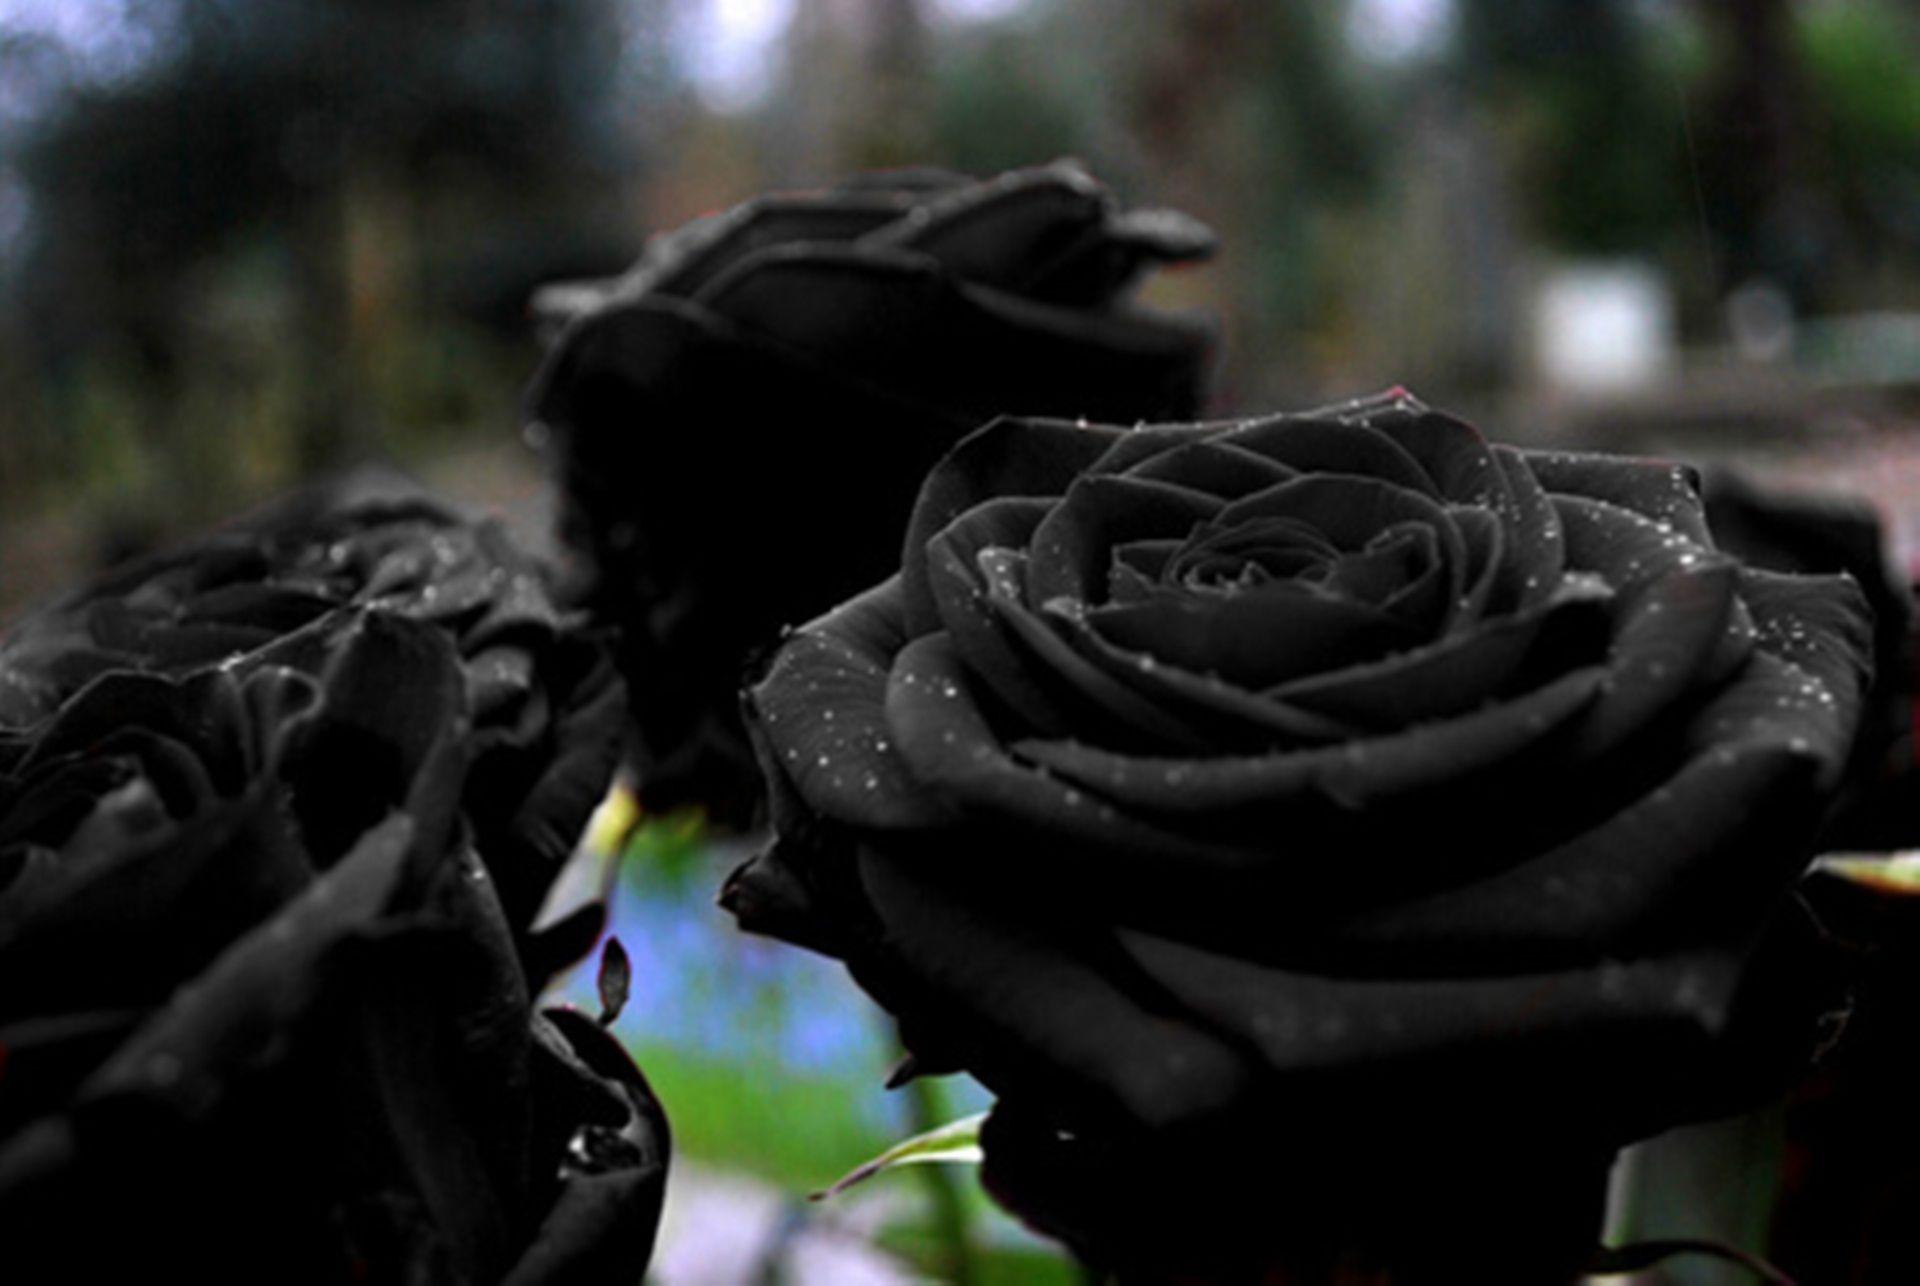 ✅ О черной розе: существуют ли в природе цветок розы с черными лепестками